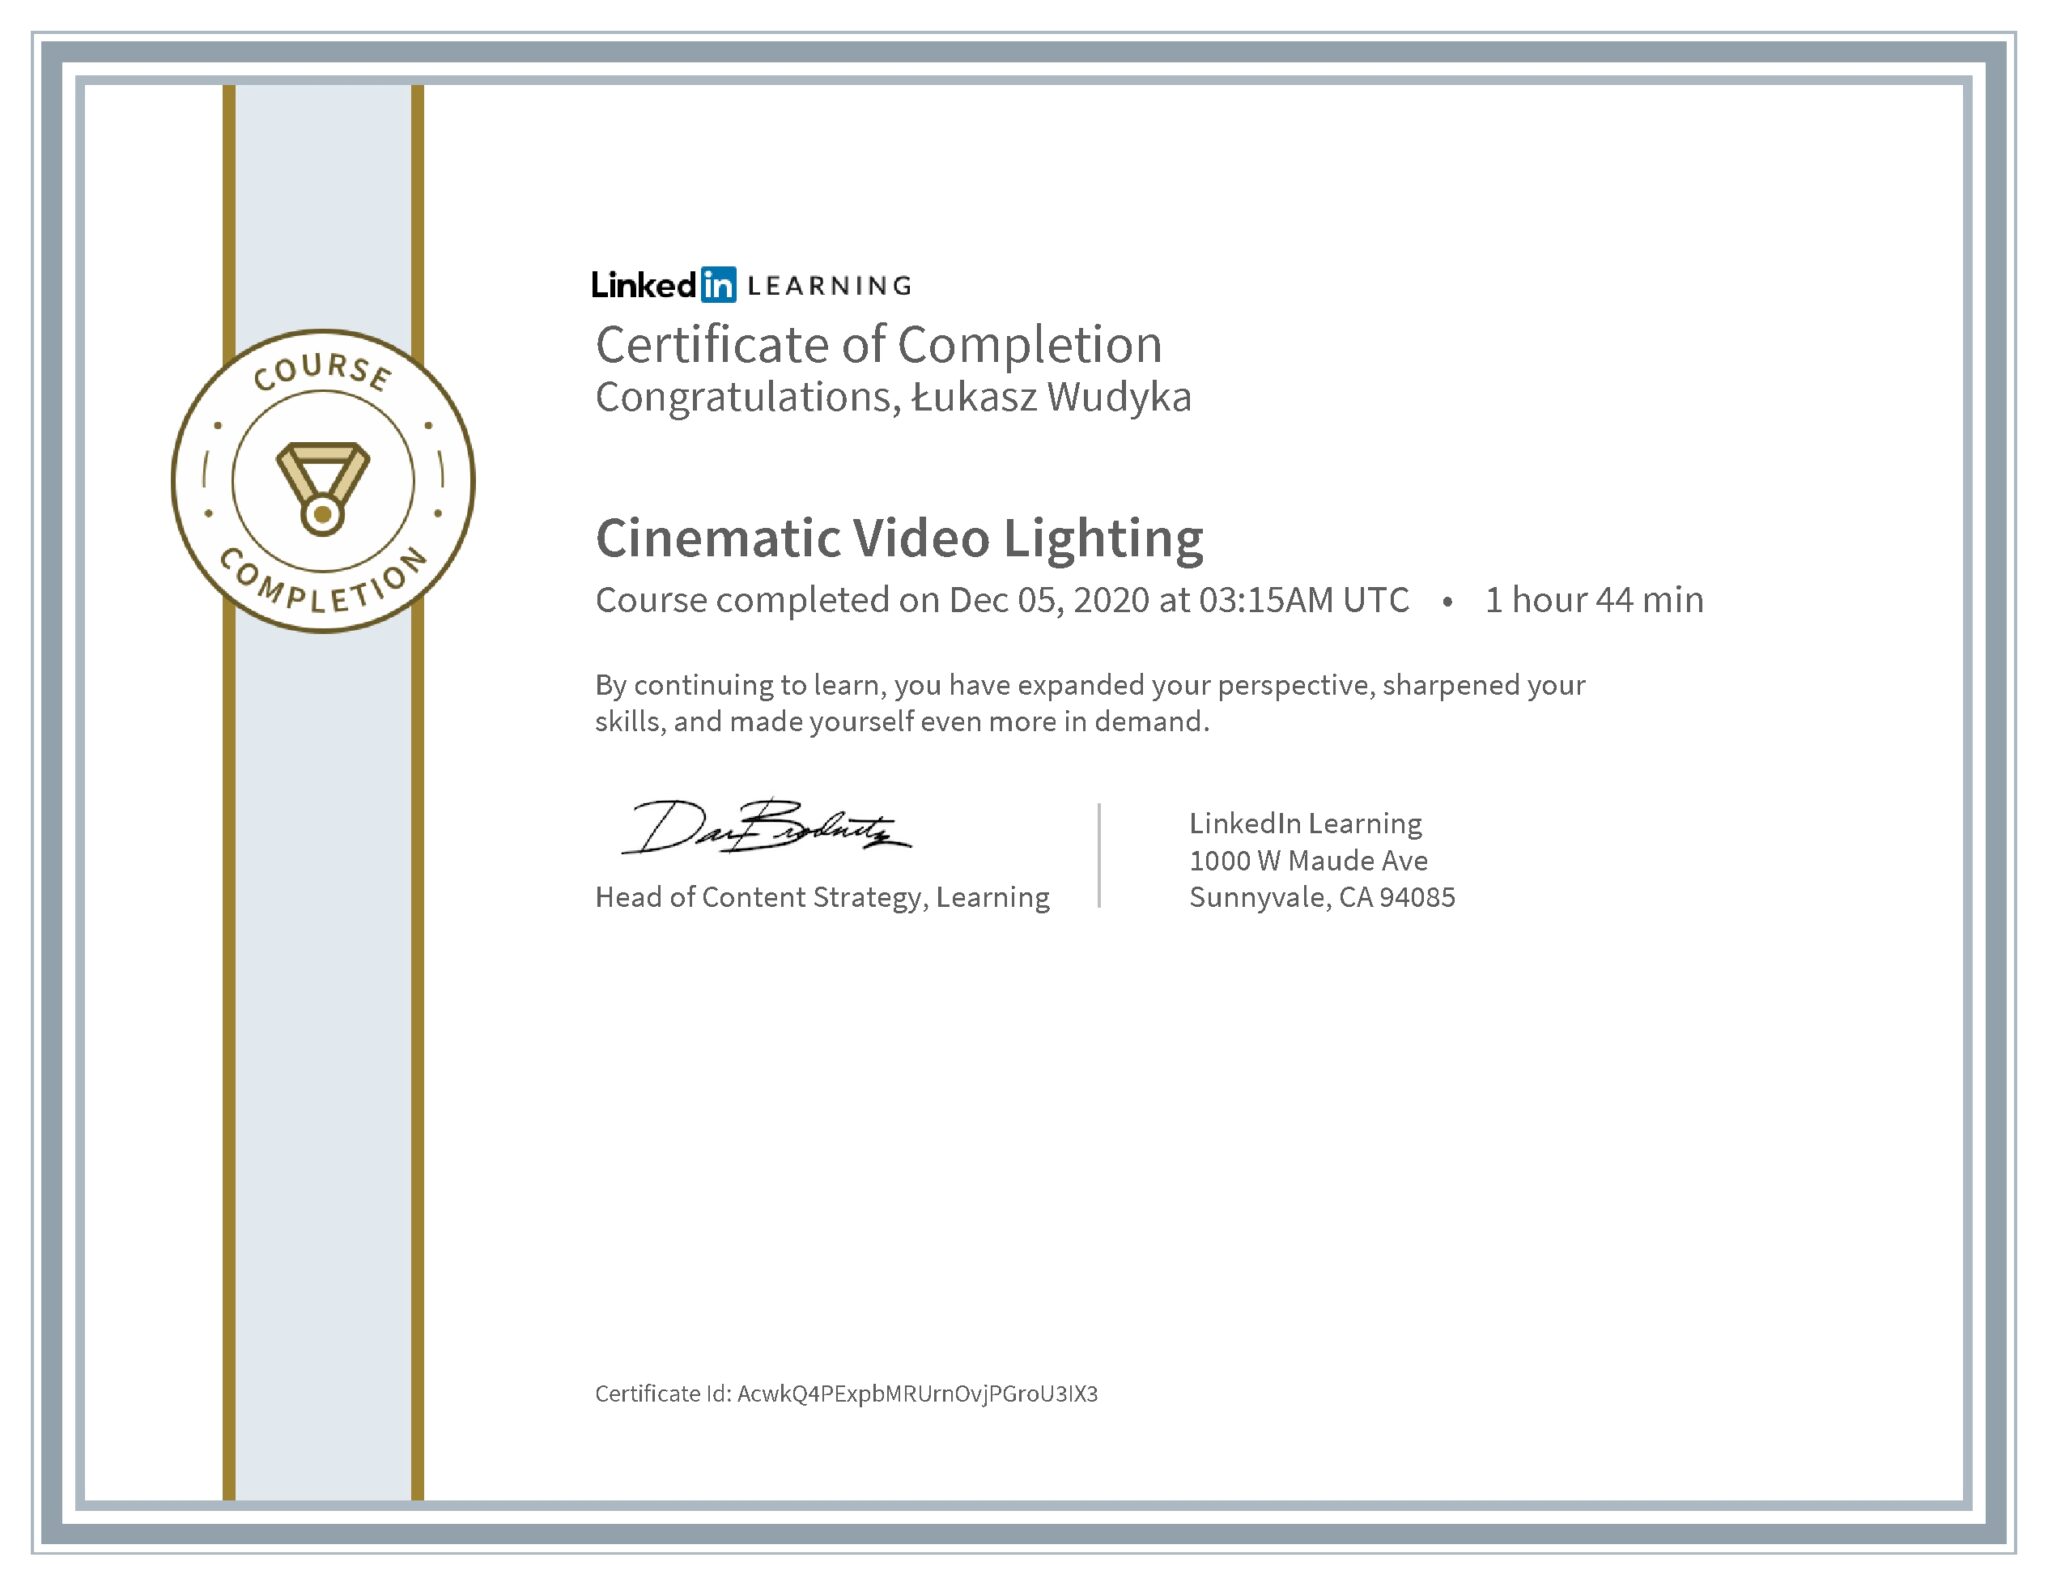 Łukasz Wudyka certyfikat LinkedIn Cinematic Video Lighting